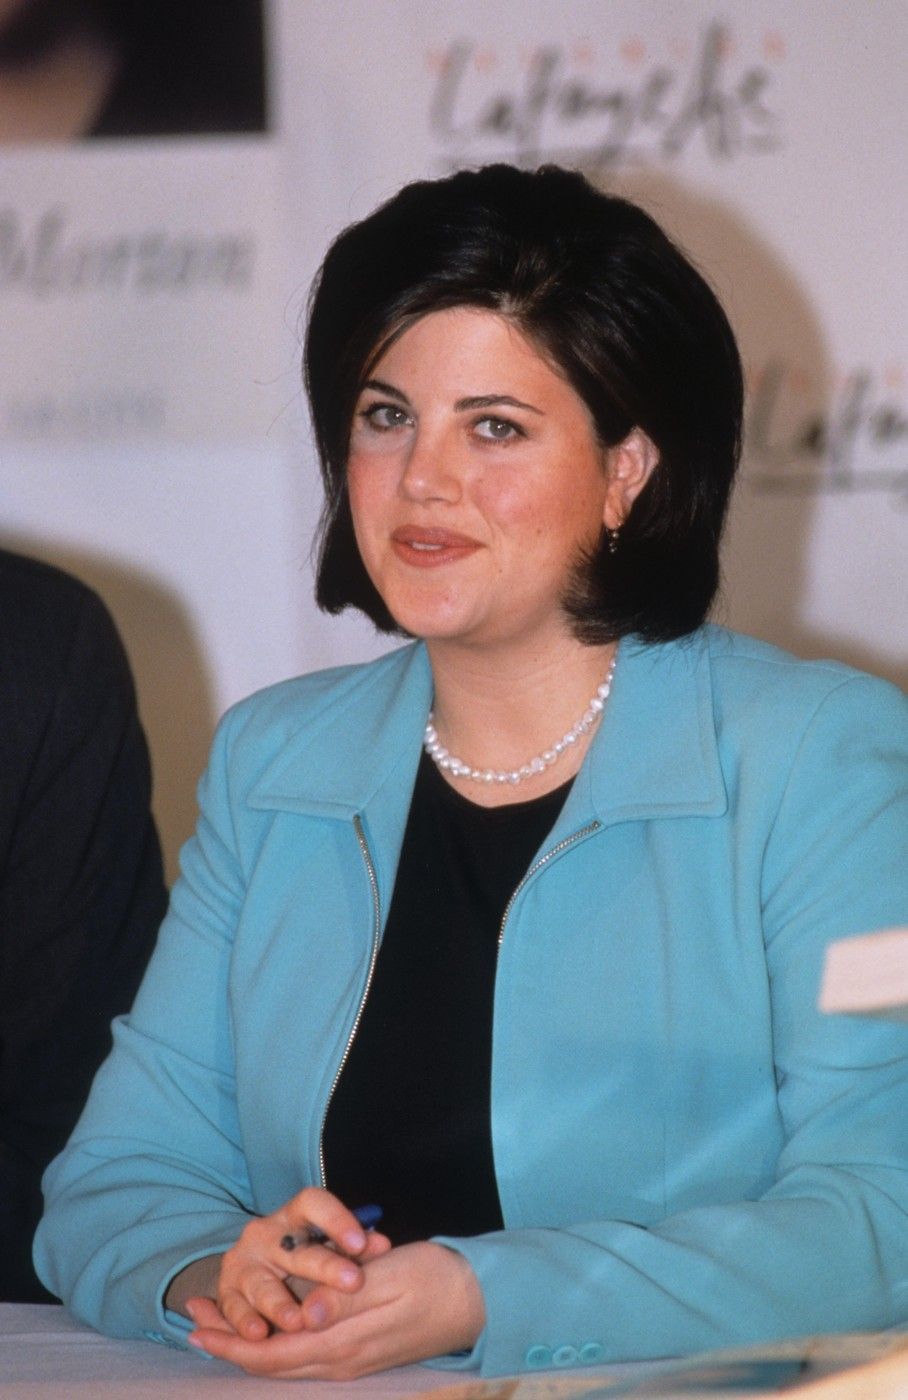 Monica Lewinsky